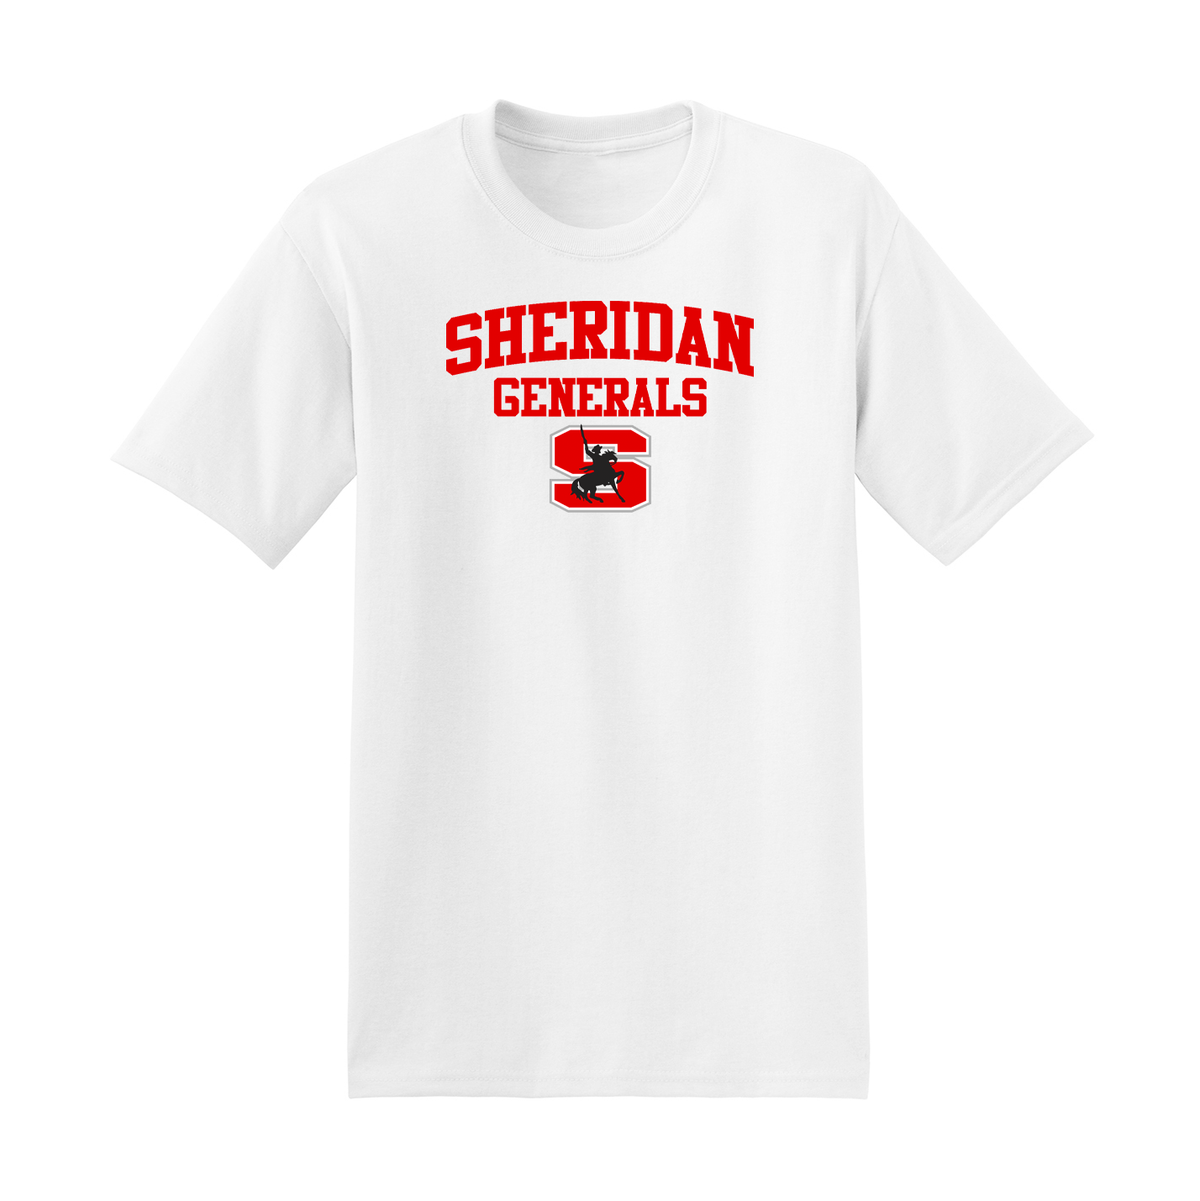 Sheridan Generals T-Shirt